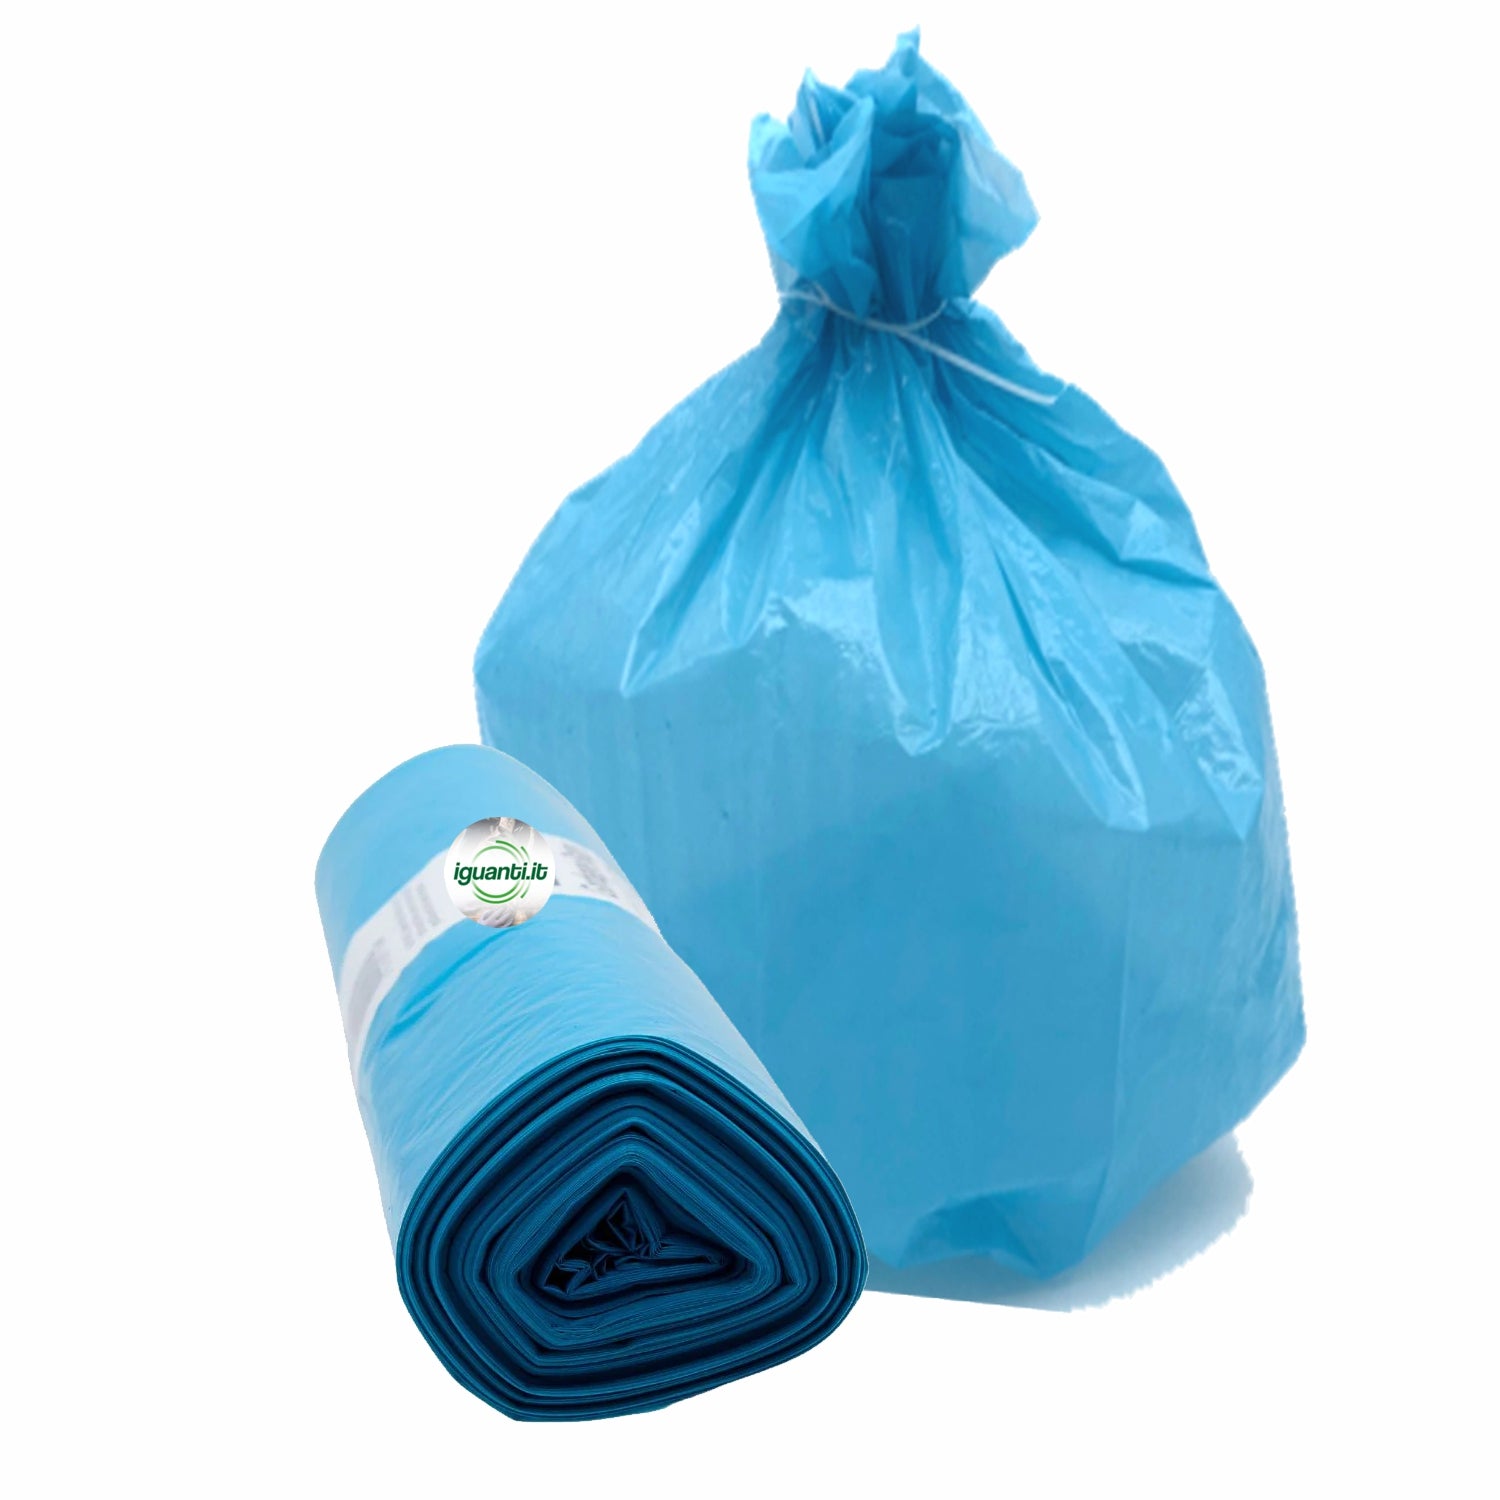 25 sacchi 30 litri spazzatura cm.50x60 colore azzurro peso gr.9